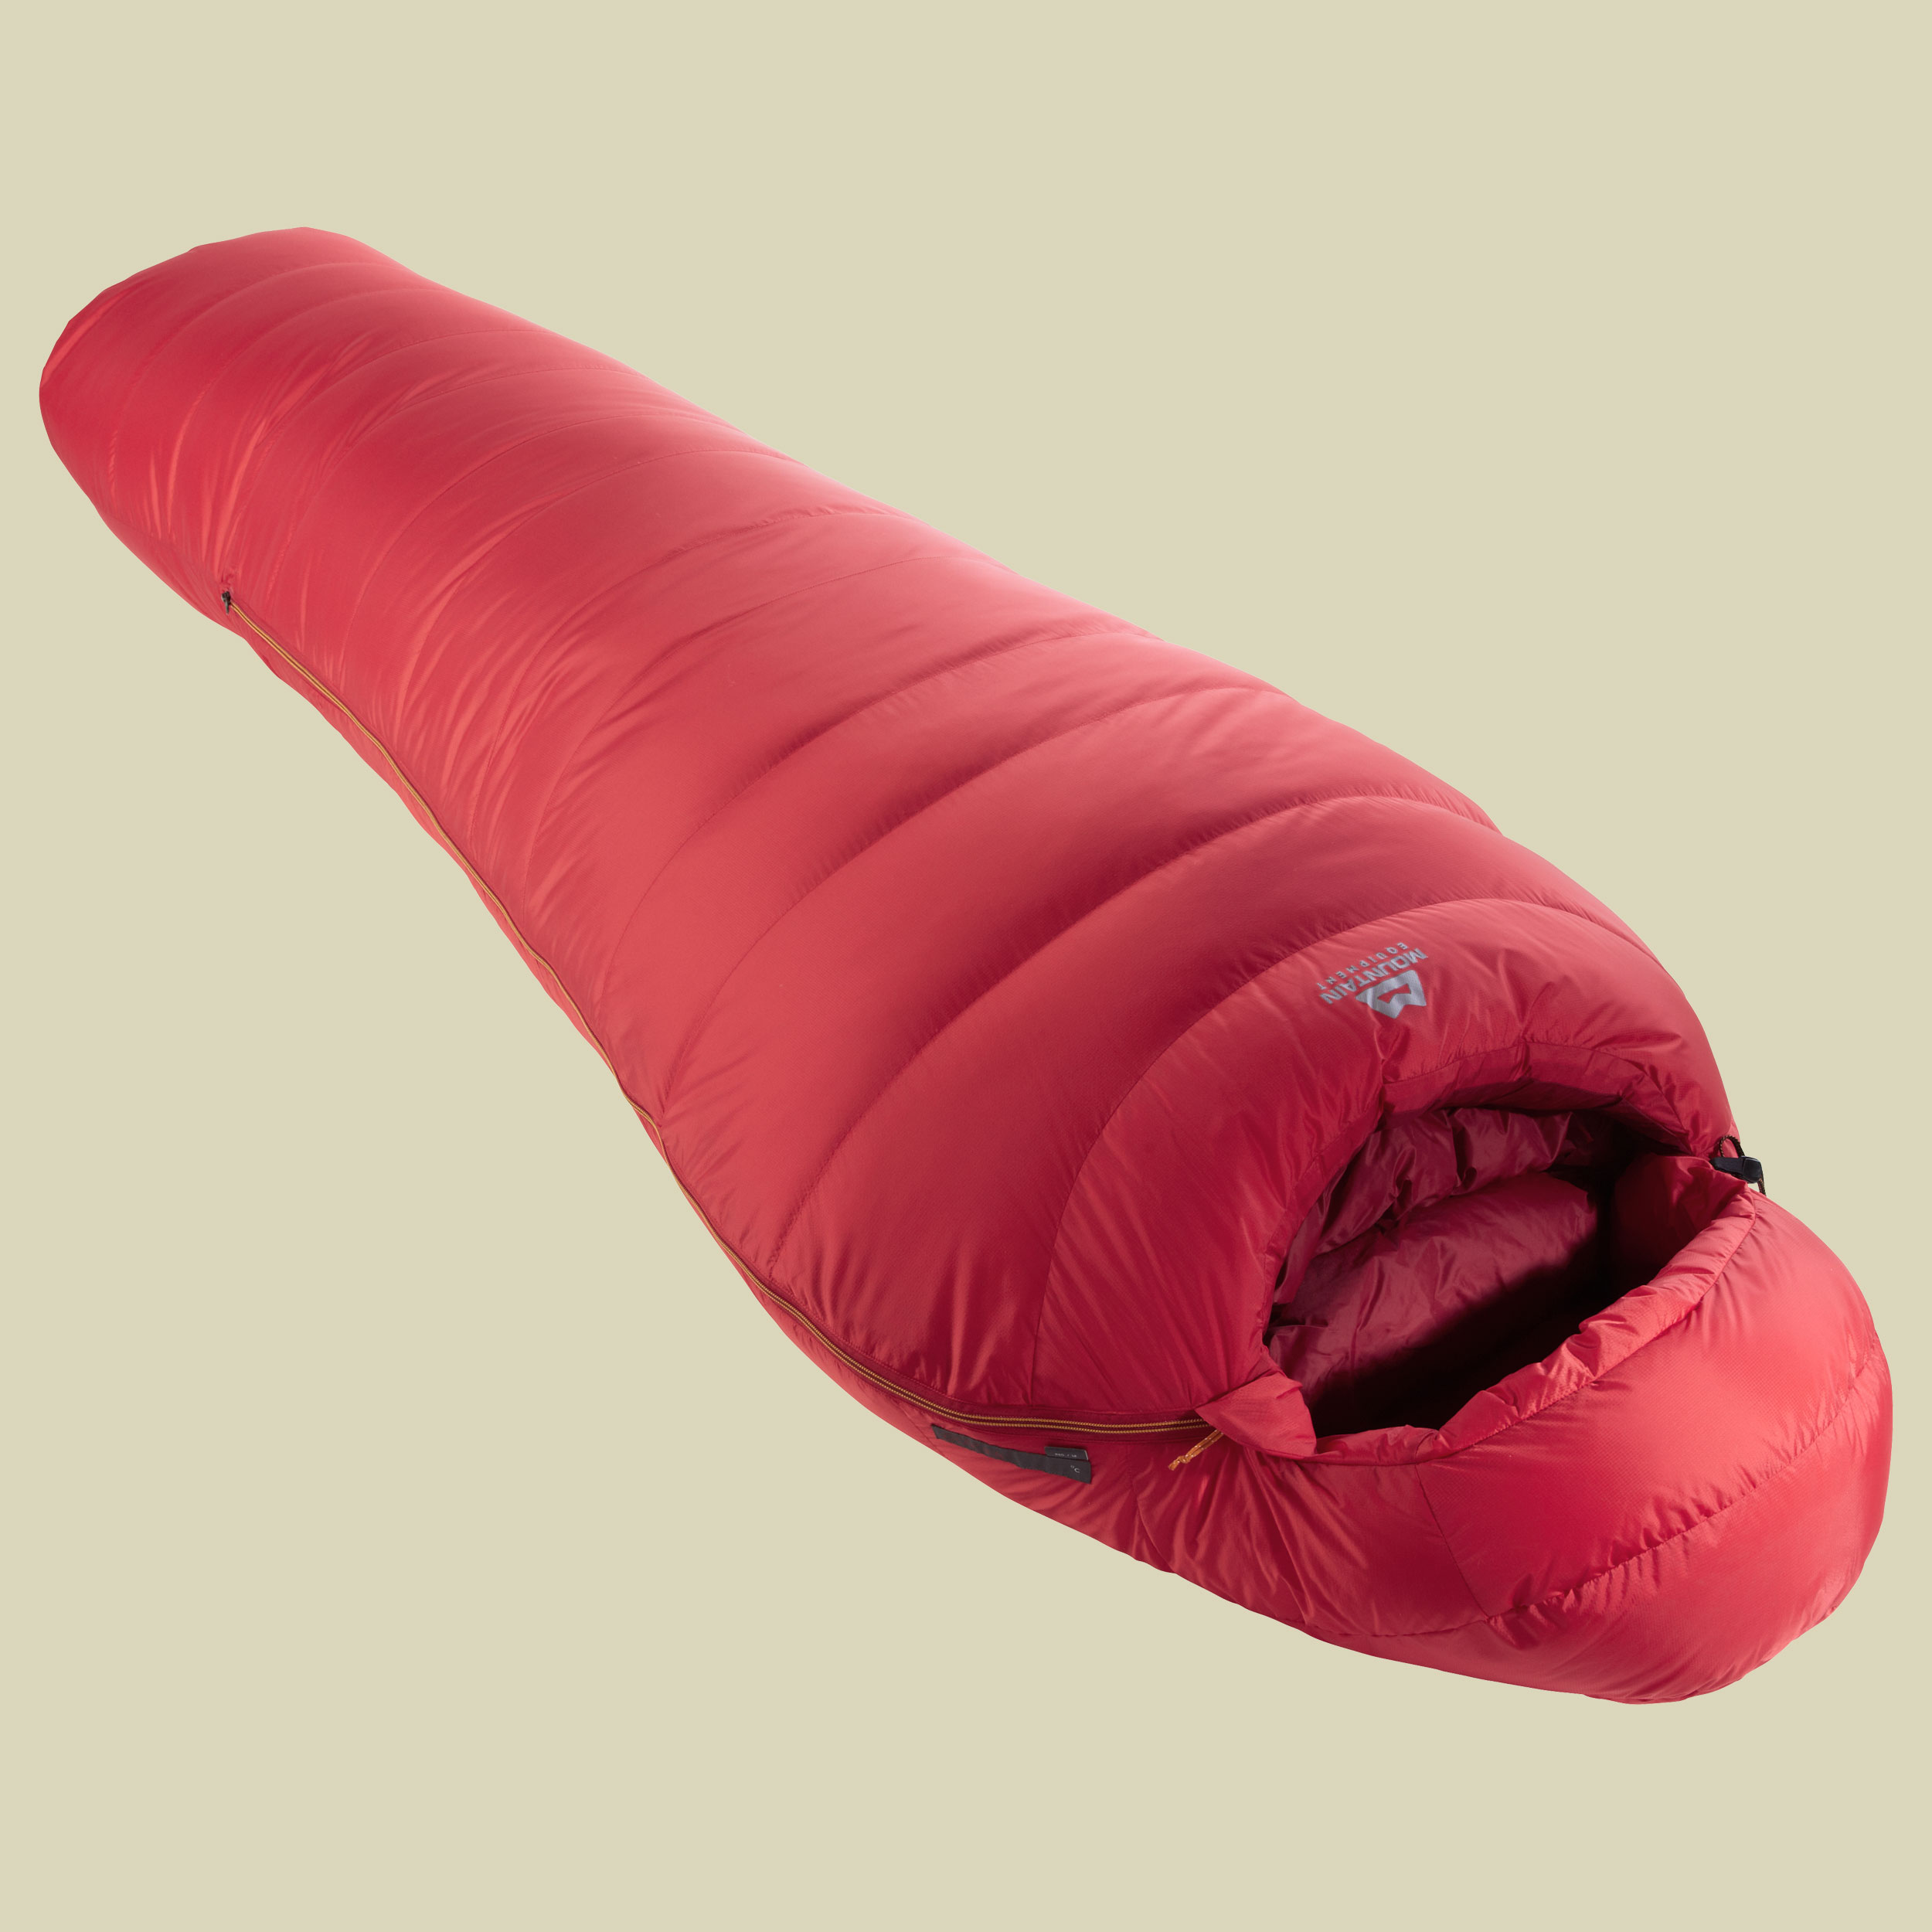 Glacier 1000 bis Körpergröße Schlafsack 185 cm cm Farbe imperial red, Reißverschluss Schlafsack links